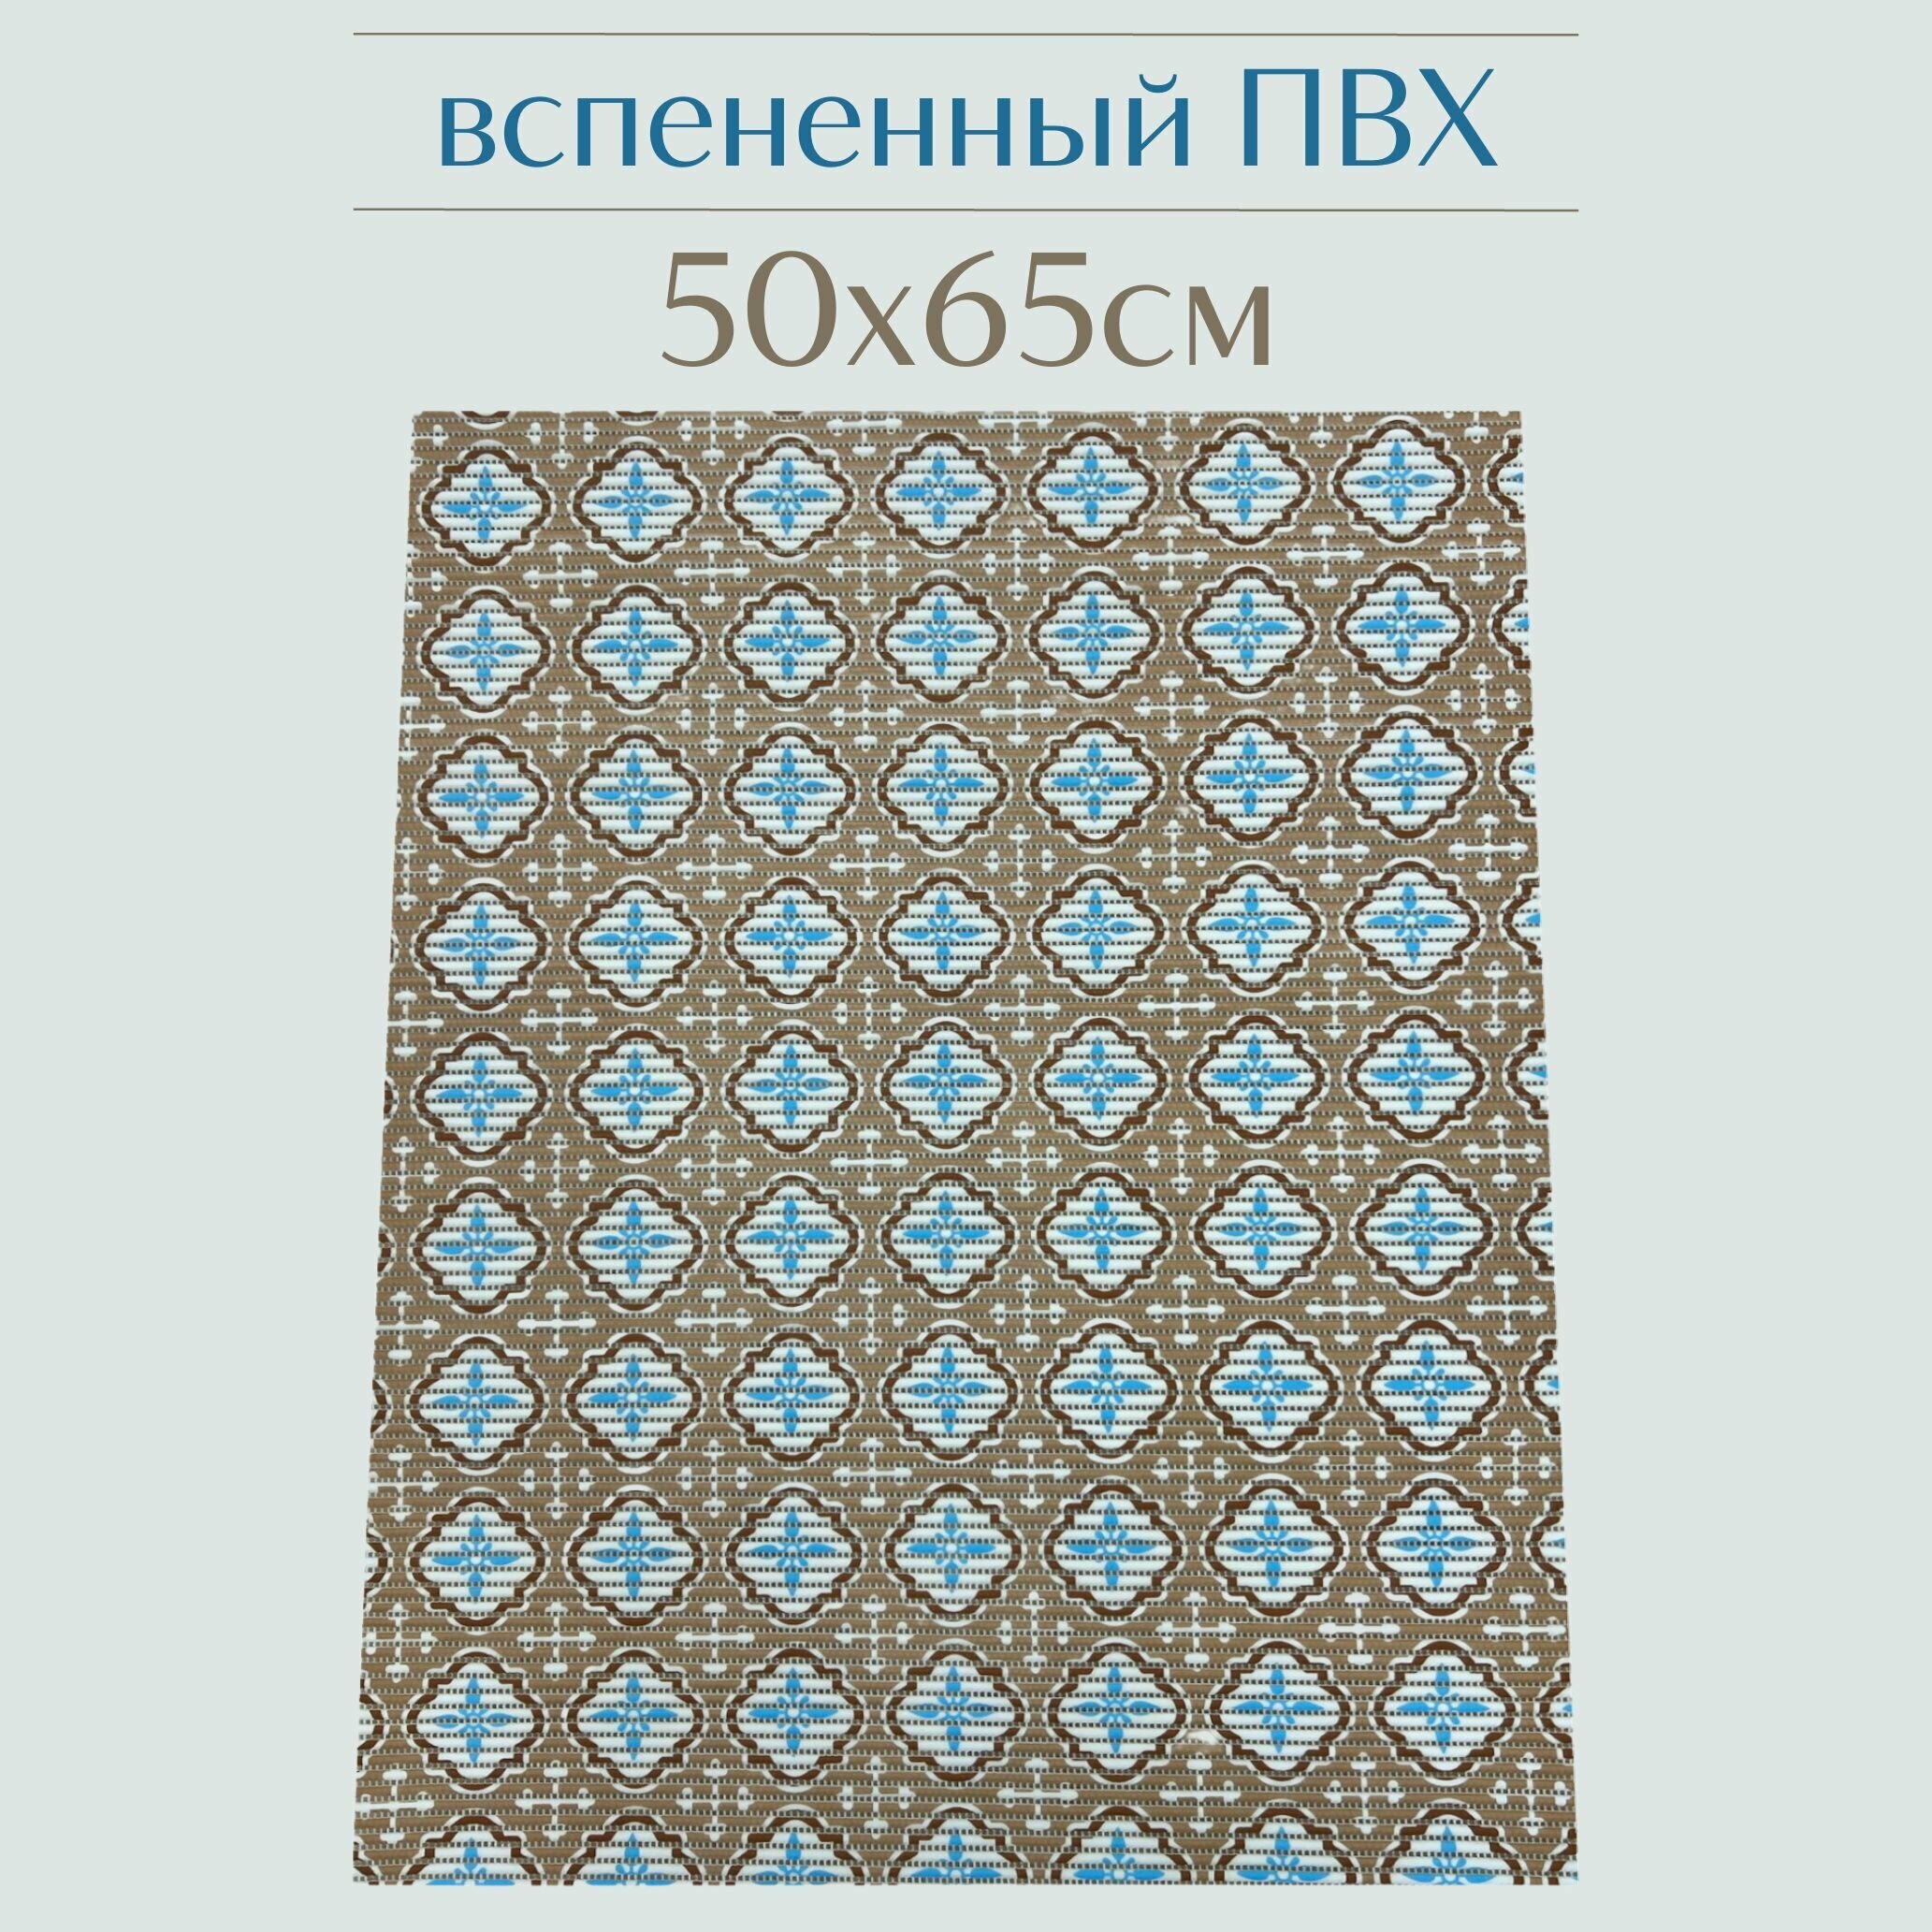 Напольный коврик для ванной из вспененного ПВХ 65x50 см, бежевый/голубой/белый, с рисунком